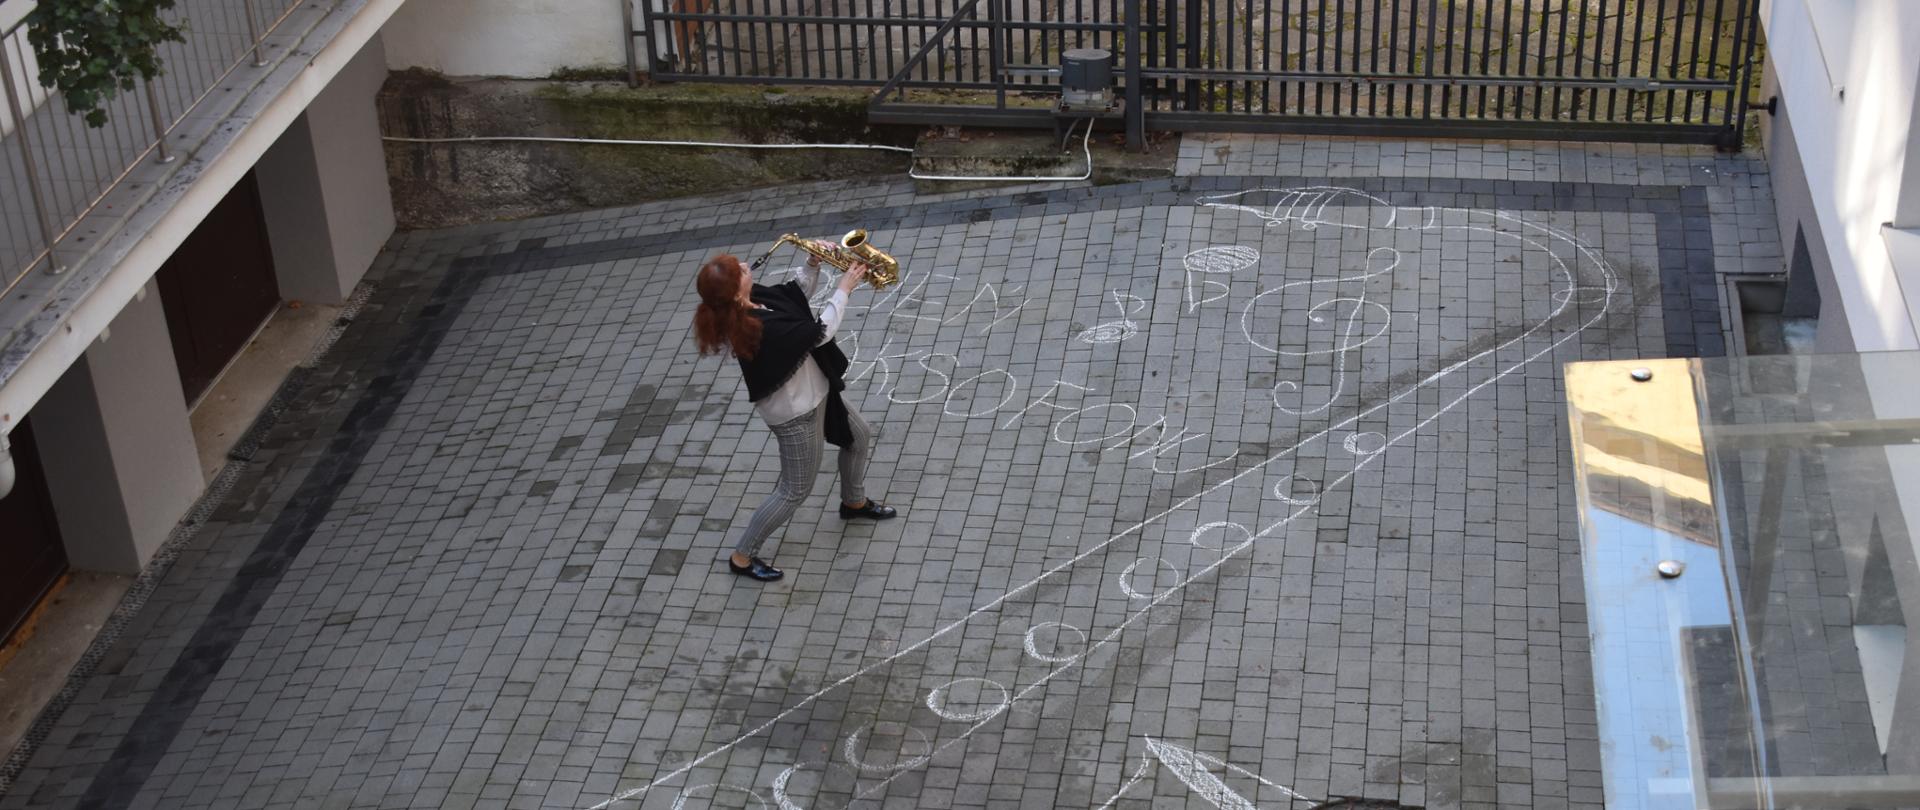 Zdjęcie przedstawia nauczyciela z saksofonem w dłoniach na dziedzińcu szkoły, na którym narysowany jest saksofon oraz napis Dzień Saksofonu. Kolorystyka zdjęcia jest szara. 